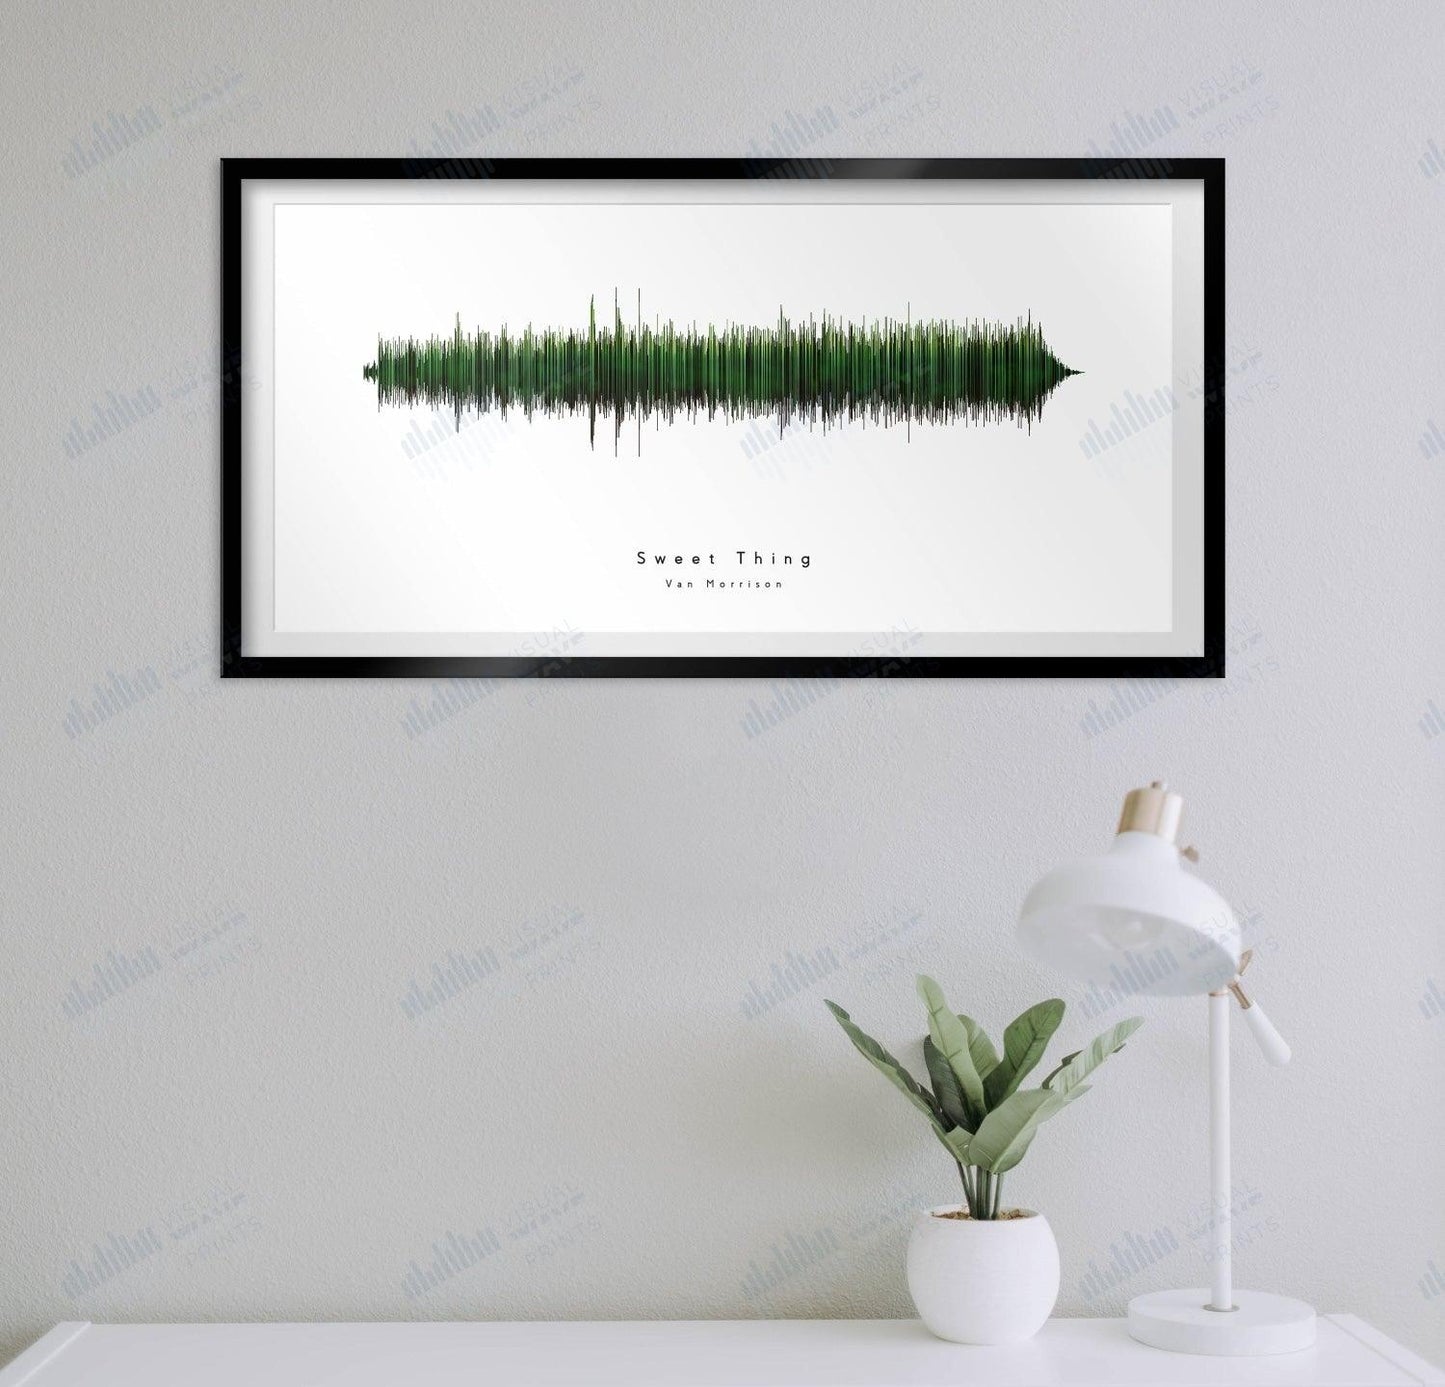 Sweet Thing by Van Morrison - Visual Wave Prints